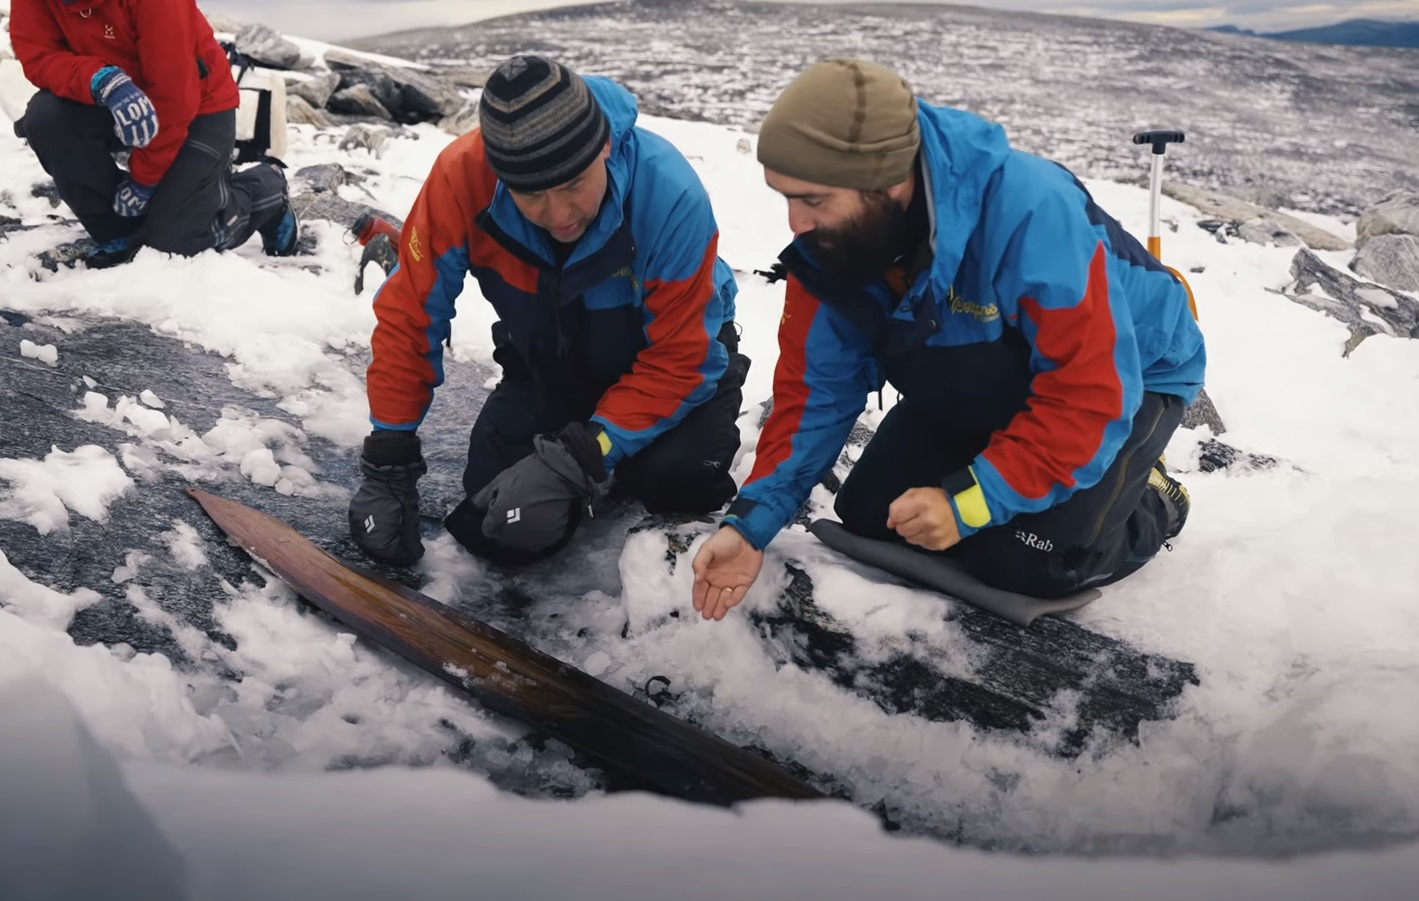 Νορβηγία: Ανακαλύφθηκε το αρχαιότερο… ζευγάρι πέδιλων σκι ηλικίας 1.300 ετών! video